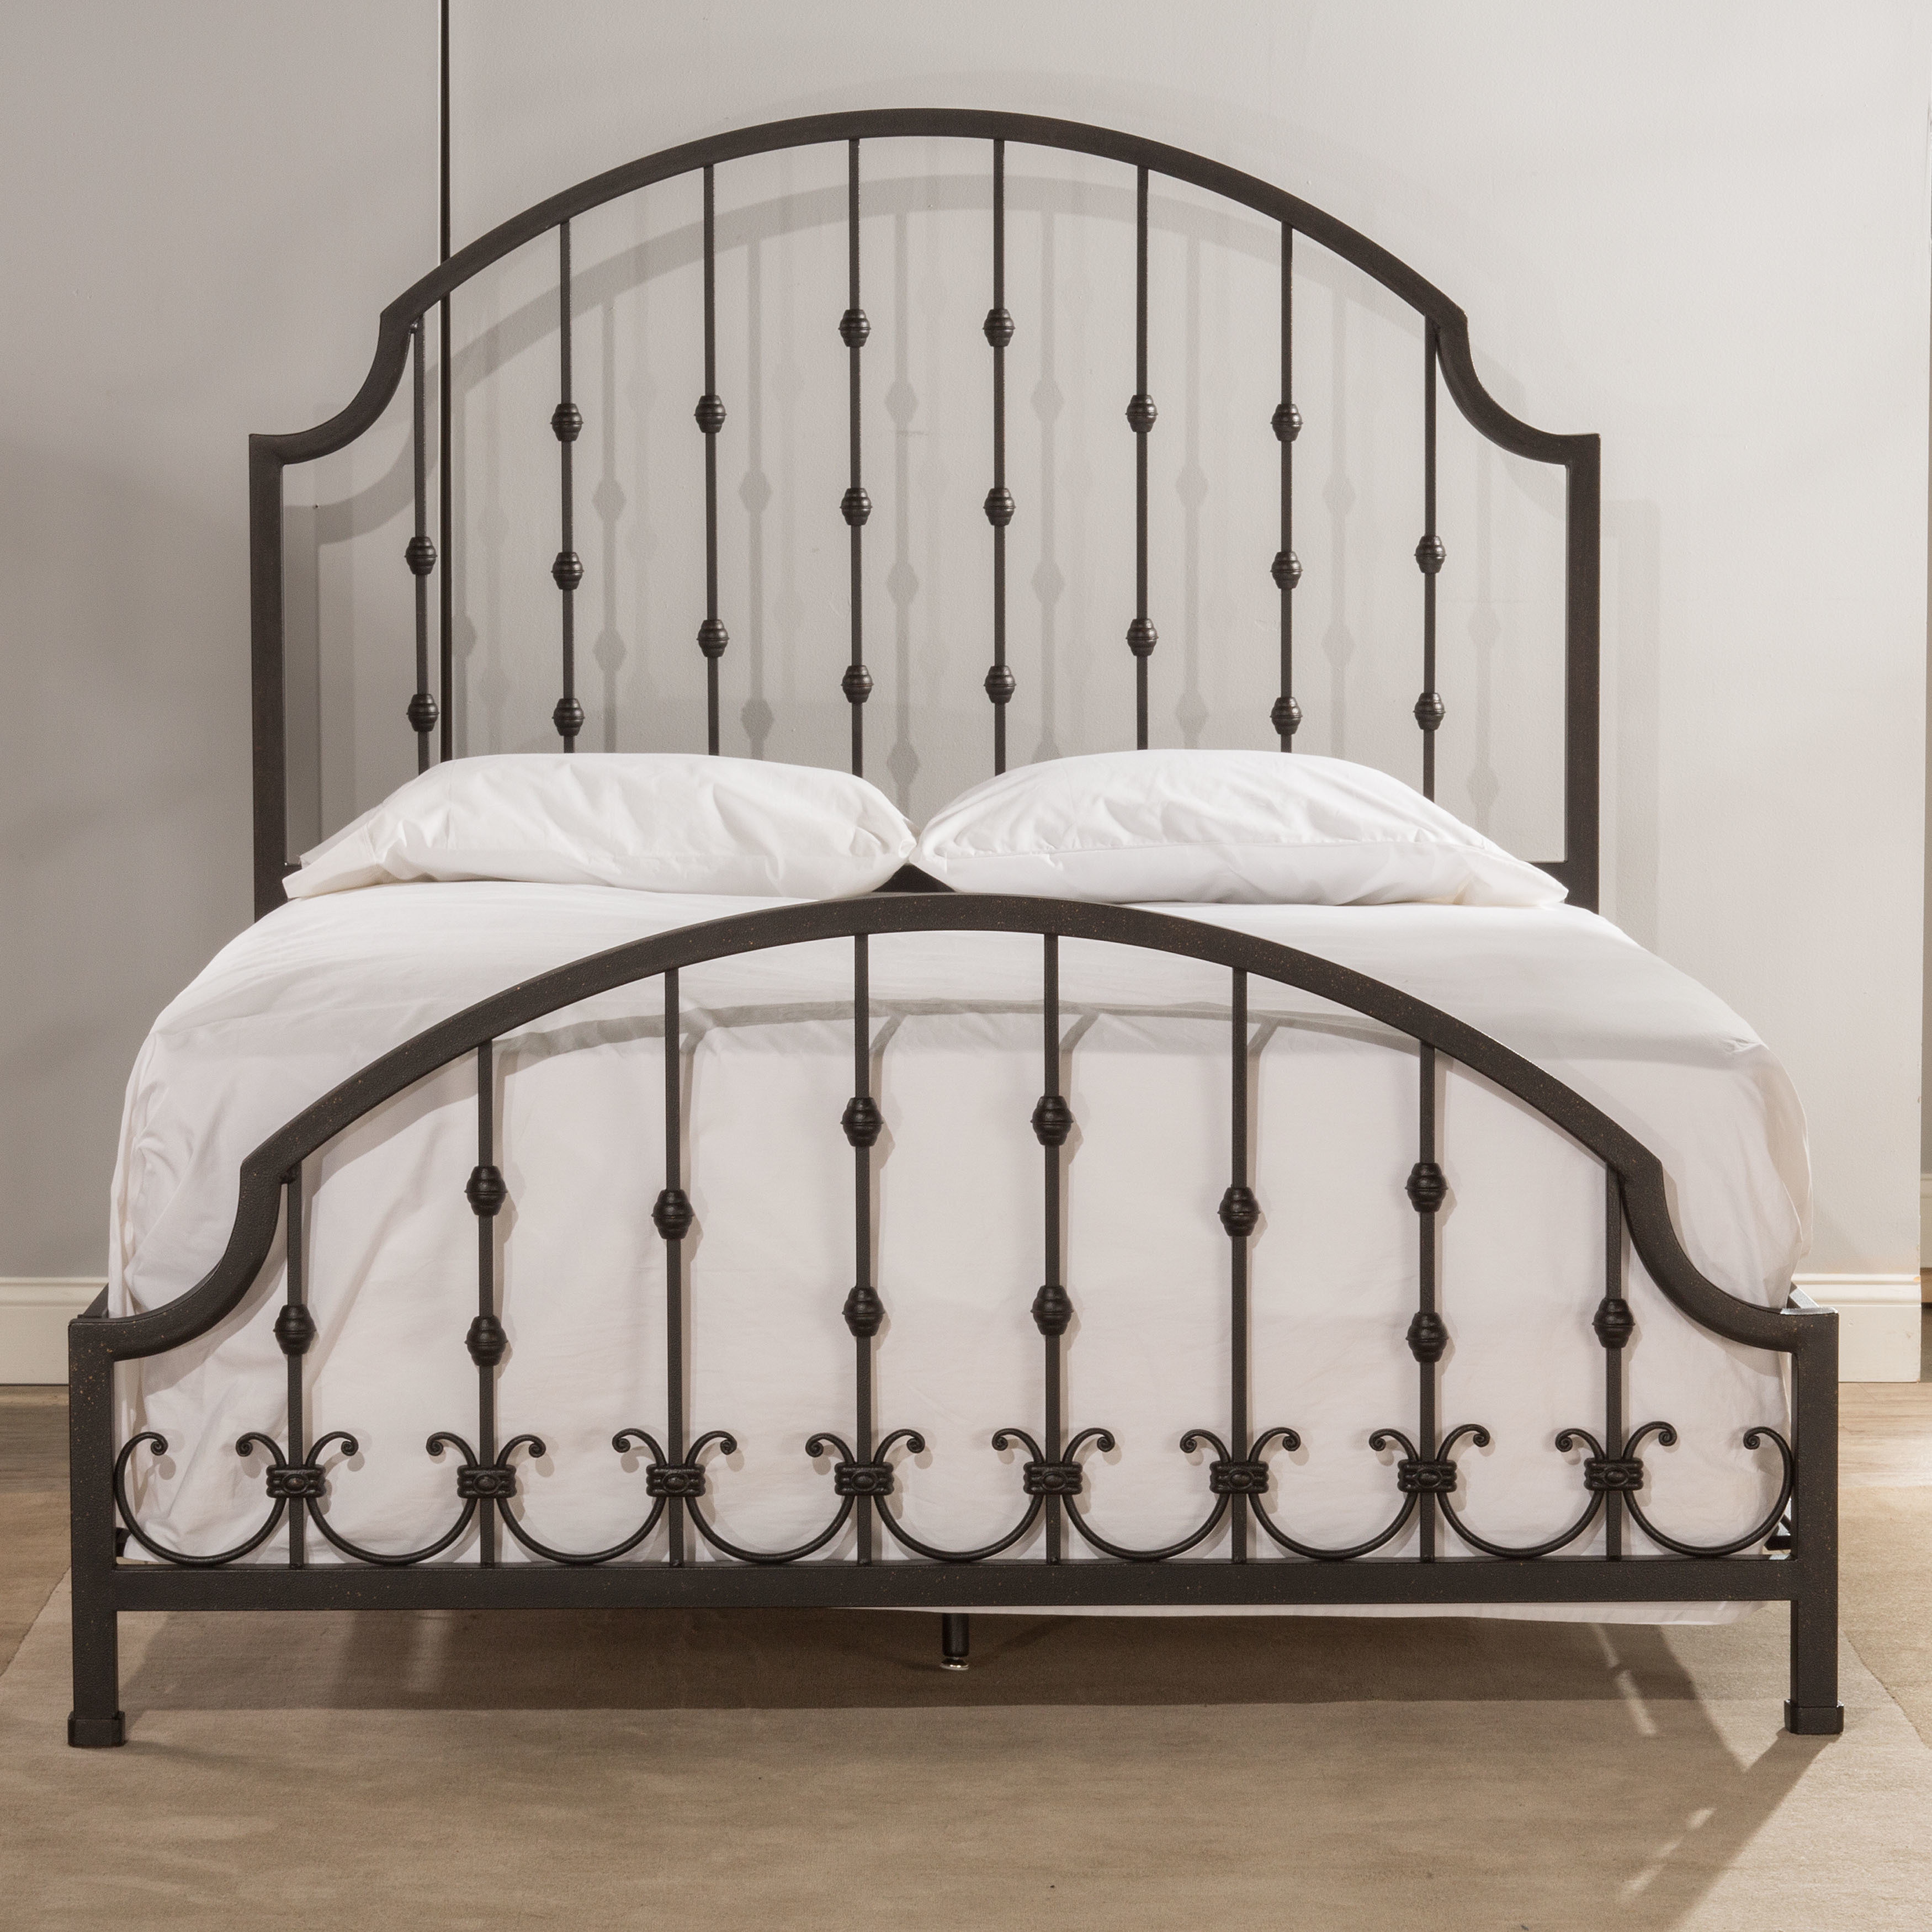 Shop Hillsdale Furniture Westgate Rustic Black Metal Bed Set